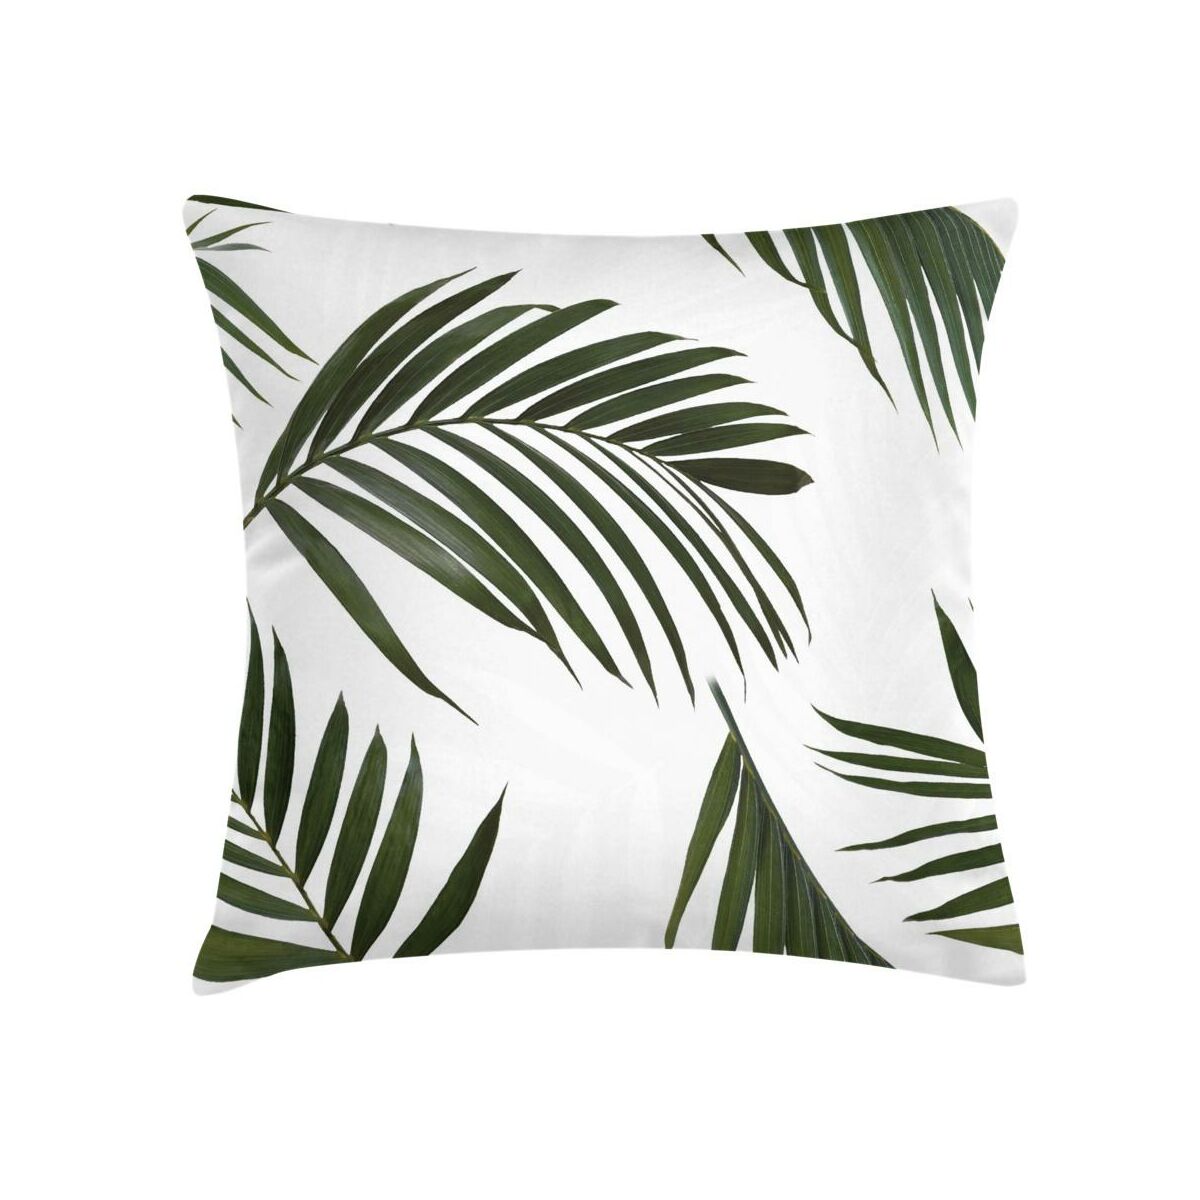 Poduszka w liście palmy Paume zielona 45 x 45 cm